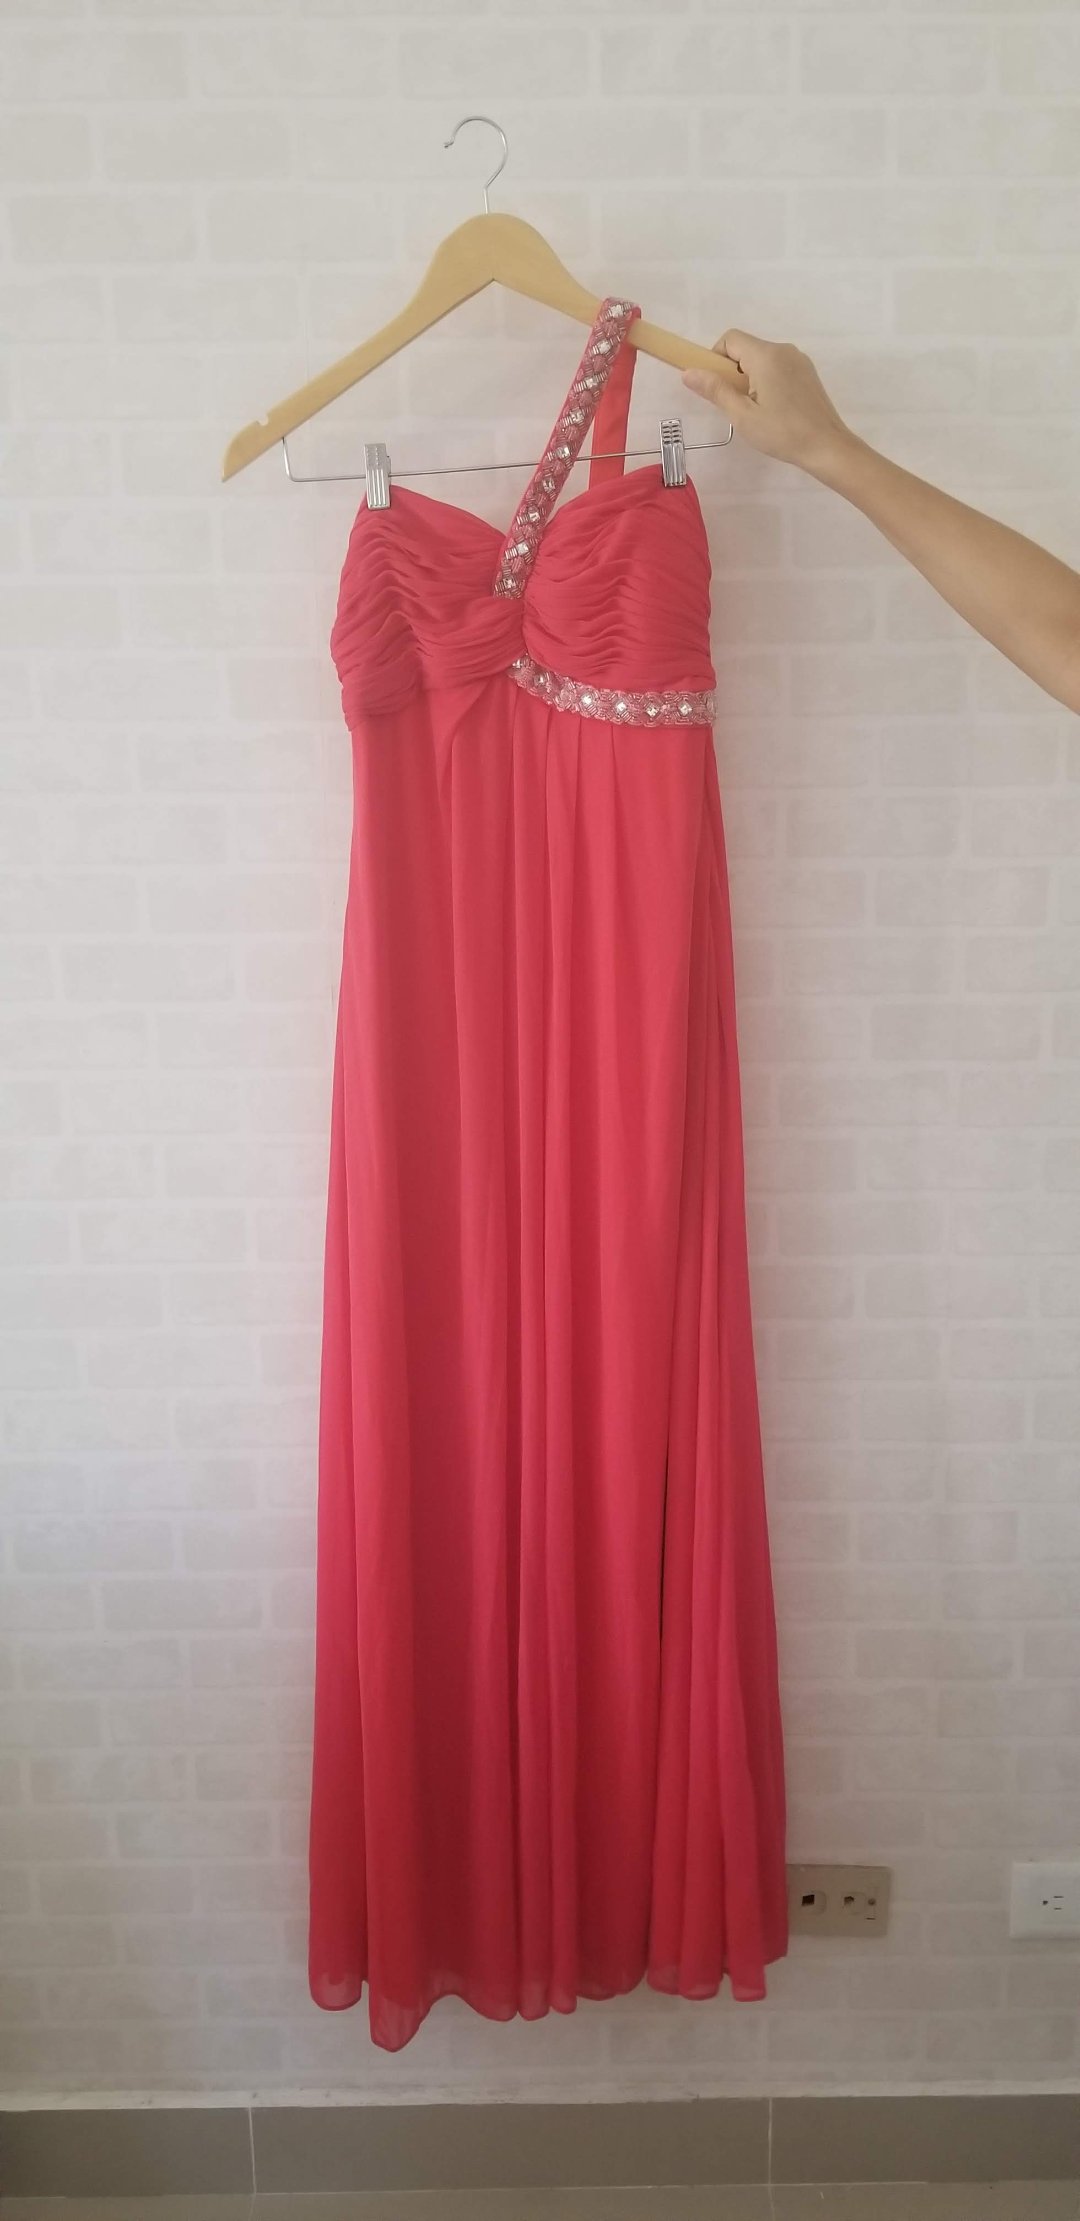 ropa para mujer - Vendo vestido de fiesta color coral